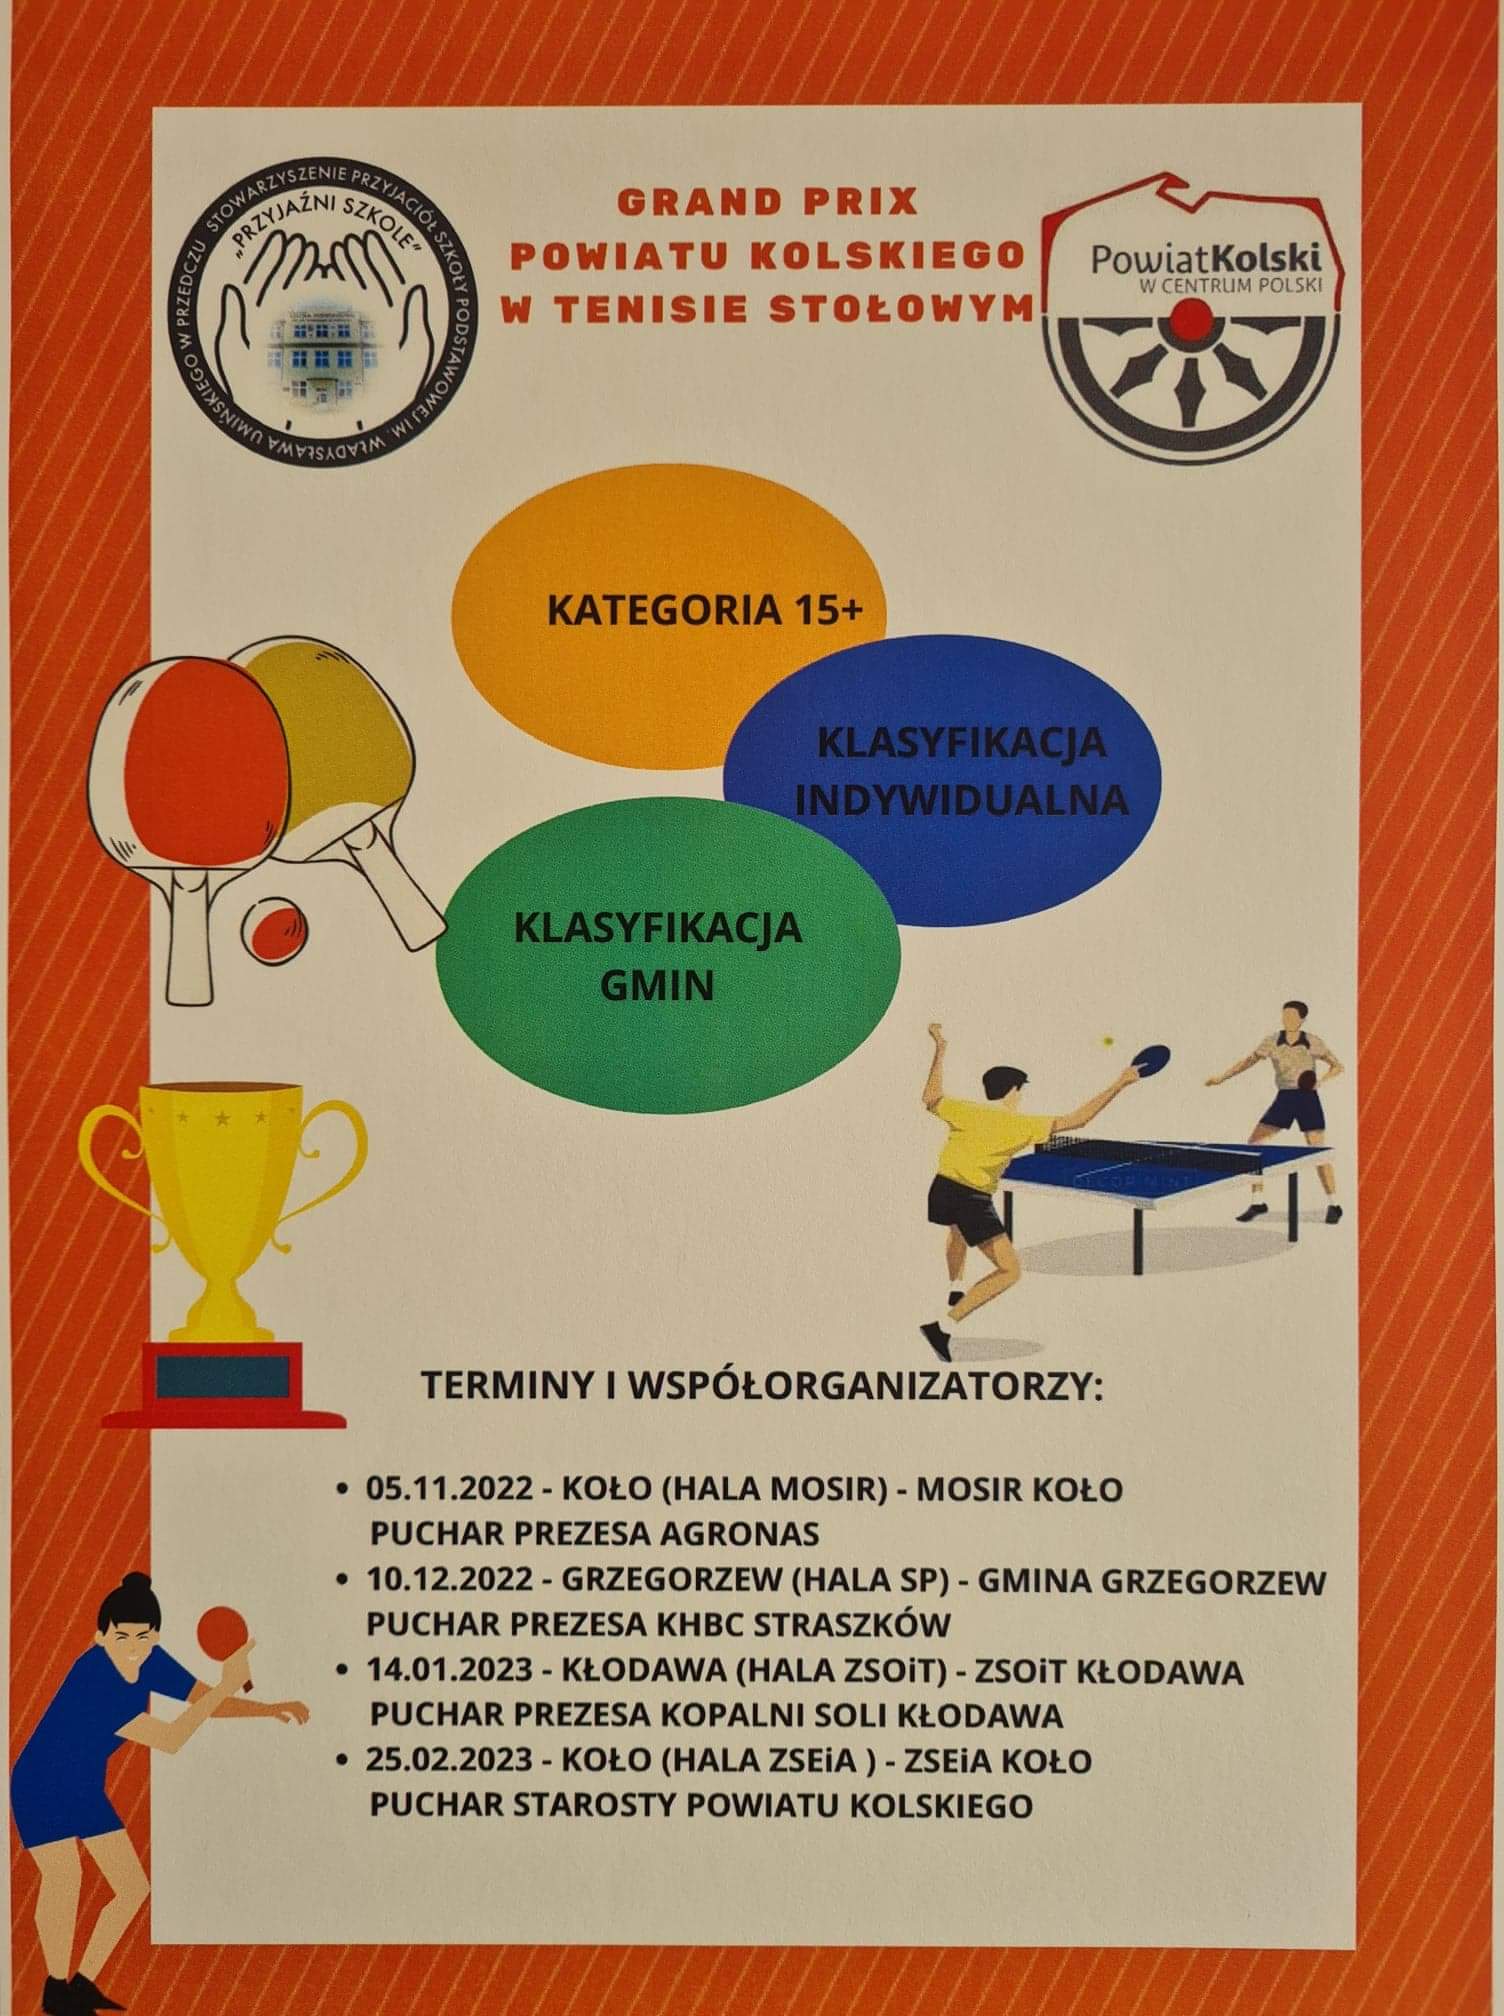 Oficjalny plakat Grand Prix Powiatu Kolskiego w tenisie stołowym